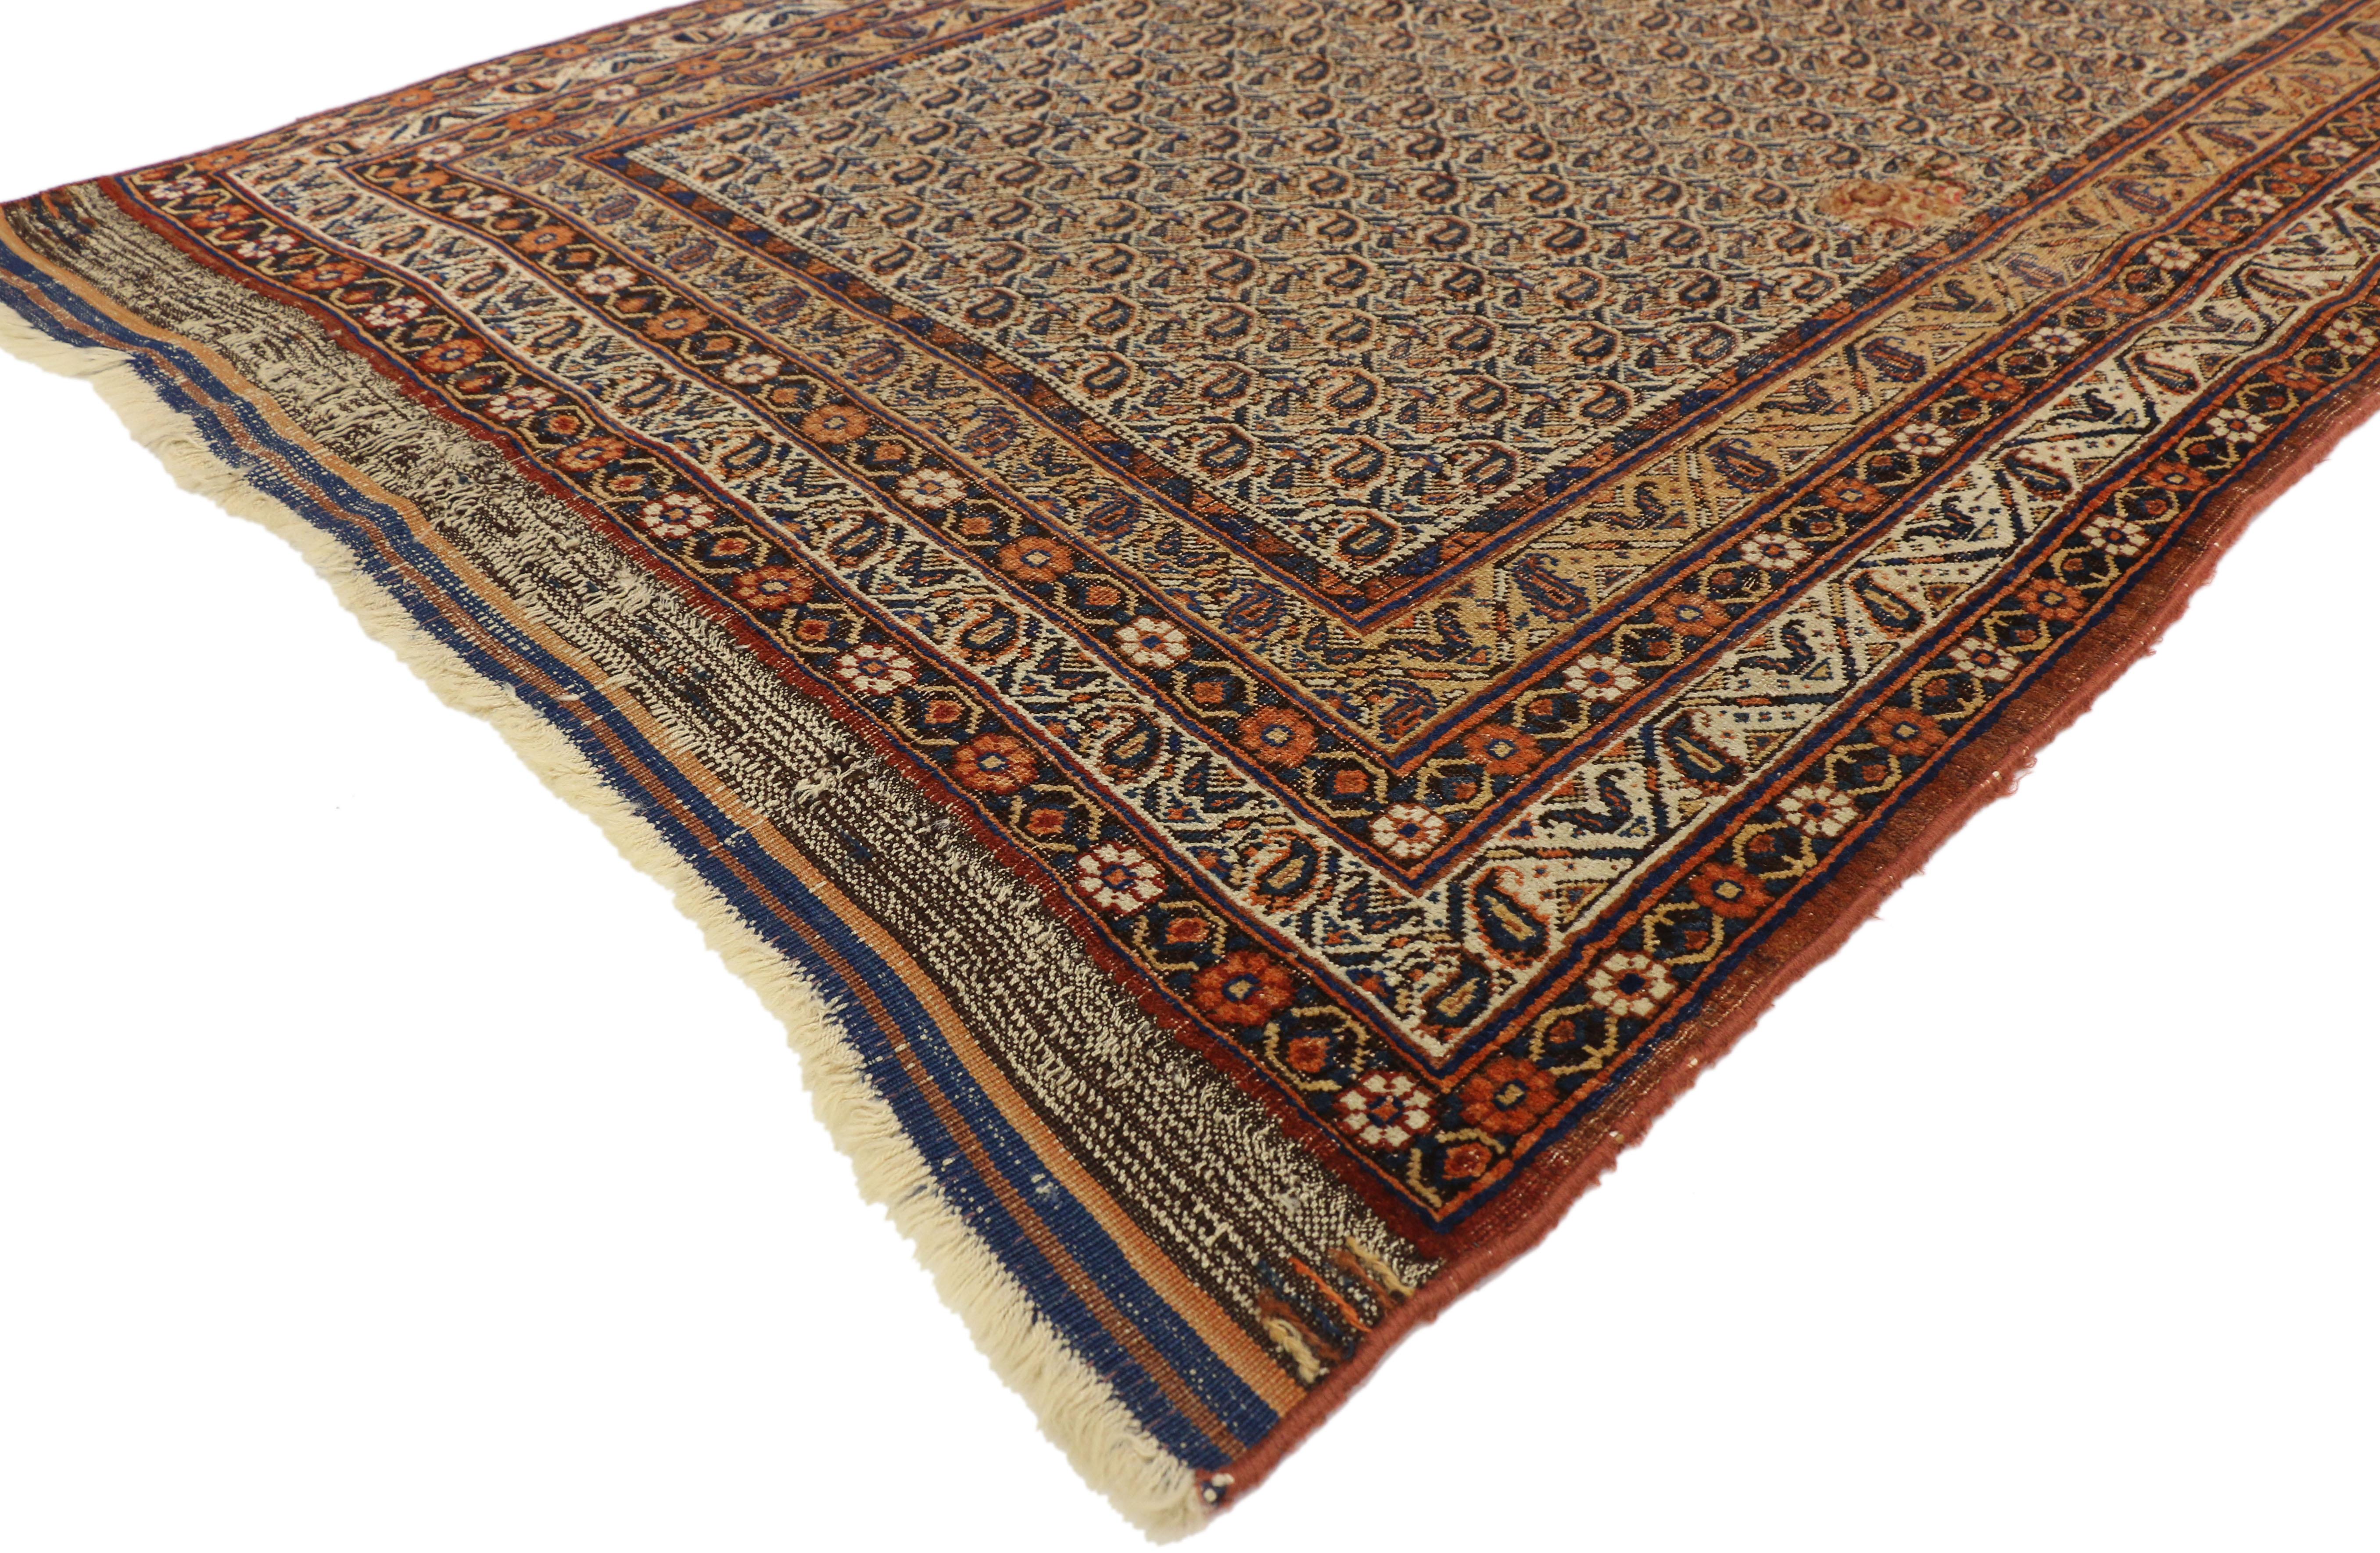 74395 Tapis d'accent persan antique en détresse de style artisanal rustique de 04'04 x 06'04. Ce tapis persan Bijar Accent, en laine nouée à la main, présente un motif boteh sur l'ensemble du champ, renforçant la profondeur qui relie les intérieurs